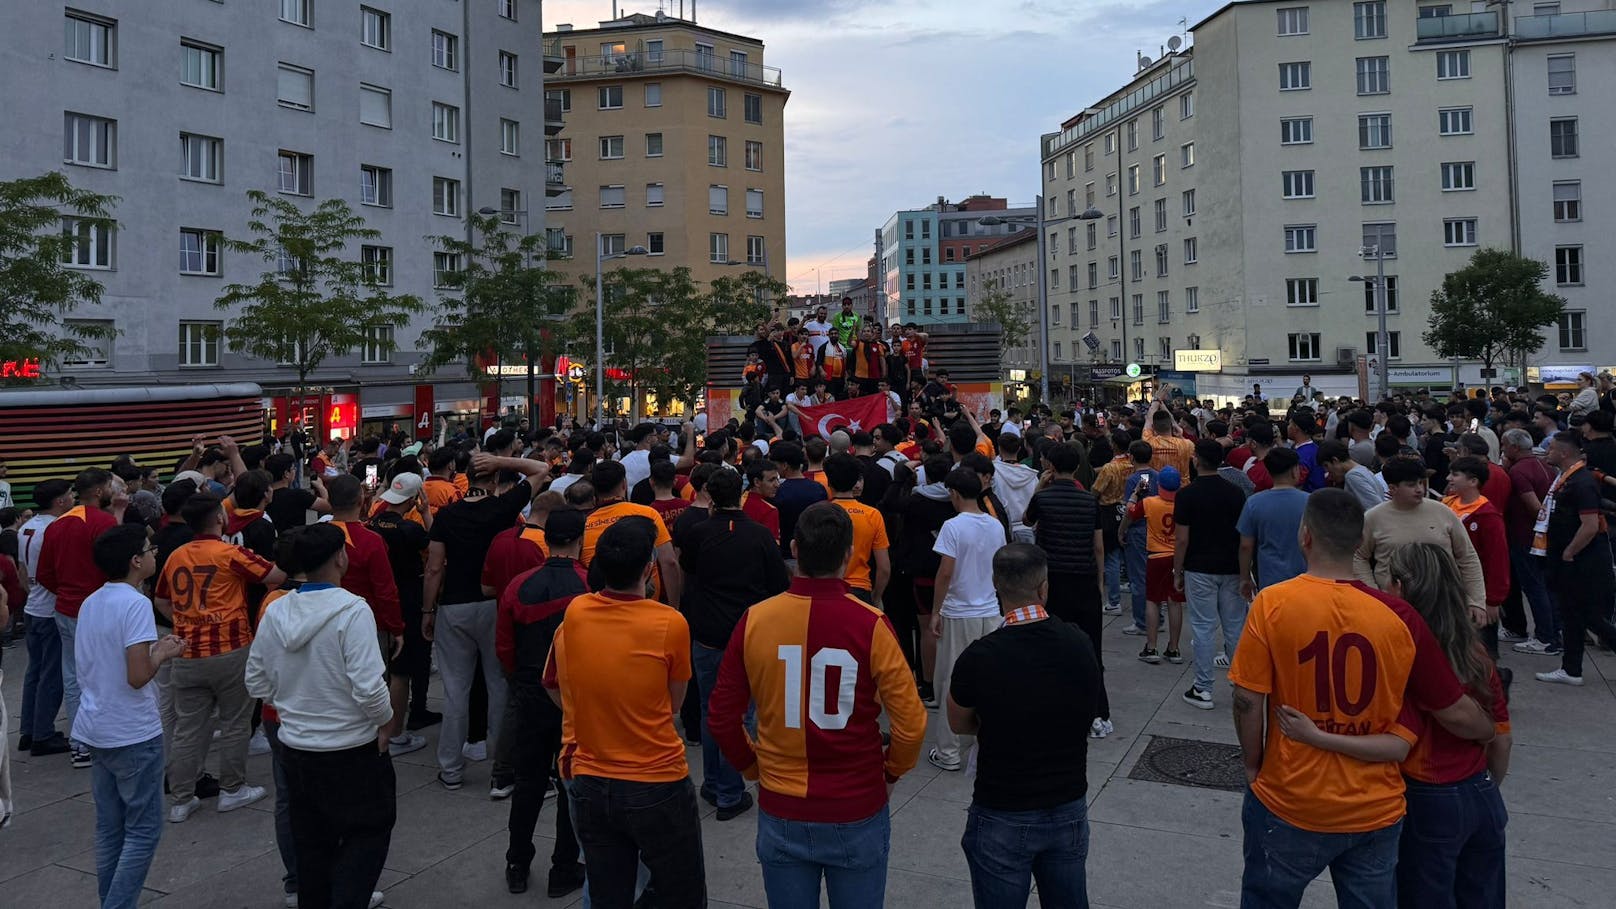 Am Sonntag gewann Galatasaray in der türkischen Süper Lig gegen Konyaspor, fixierte damit den Meistertitel. Hunderte Fans feierten den Sieg in Wien.